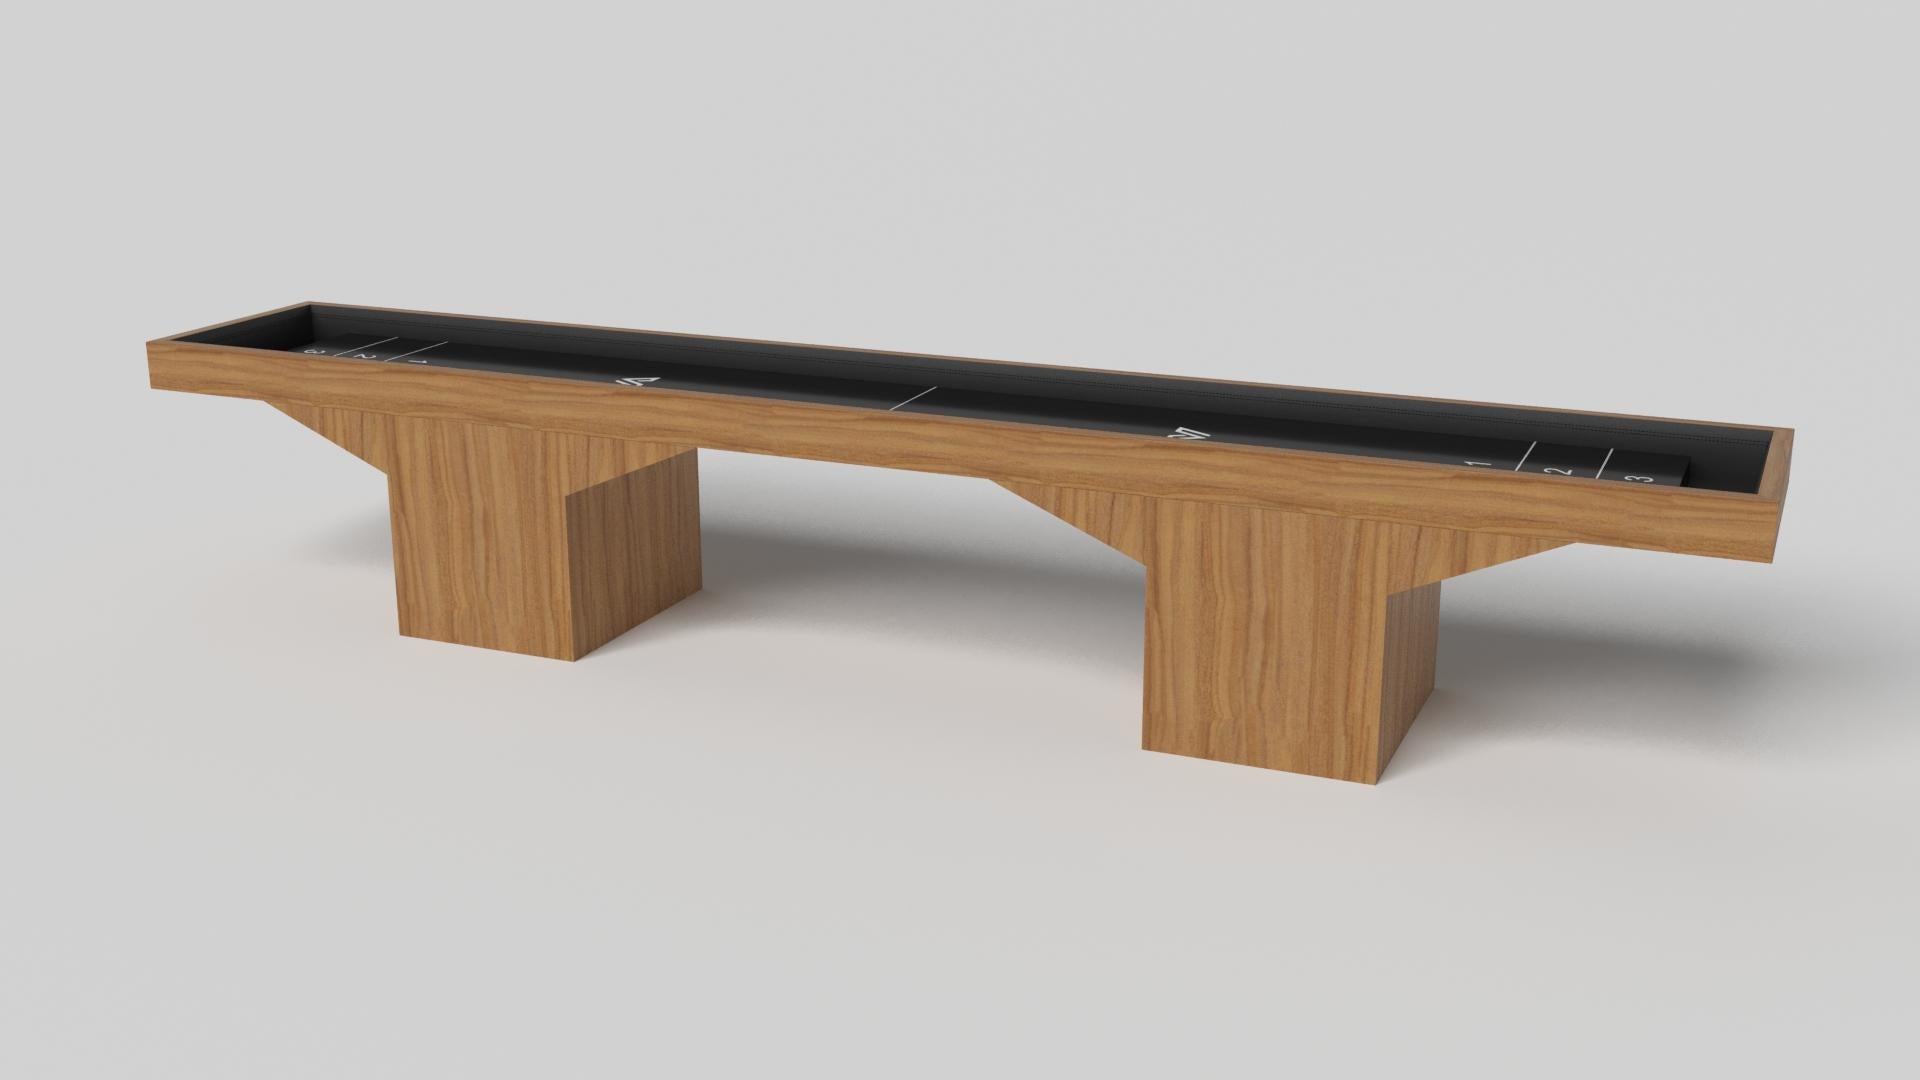 Le design minimaliste rencontre l'élégance opulente dans la table de shuffleboard Trestle. Détaillée avec une surface professionnelle pour des jeux sans fin, cette table contemporaine est fabriquée de manière experte. Les pieds carrés lui confèrent